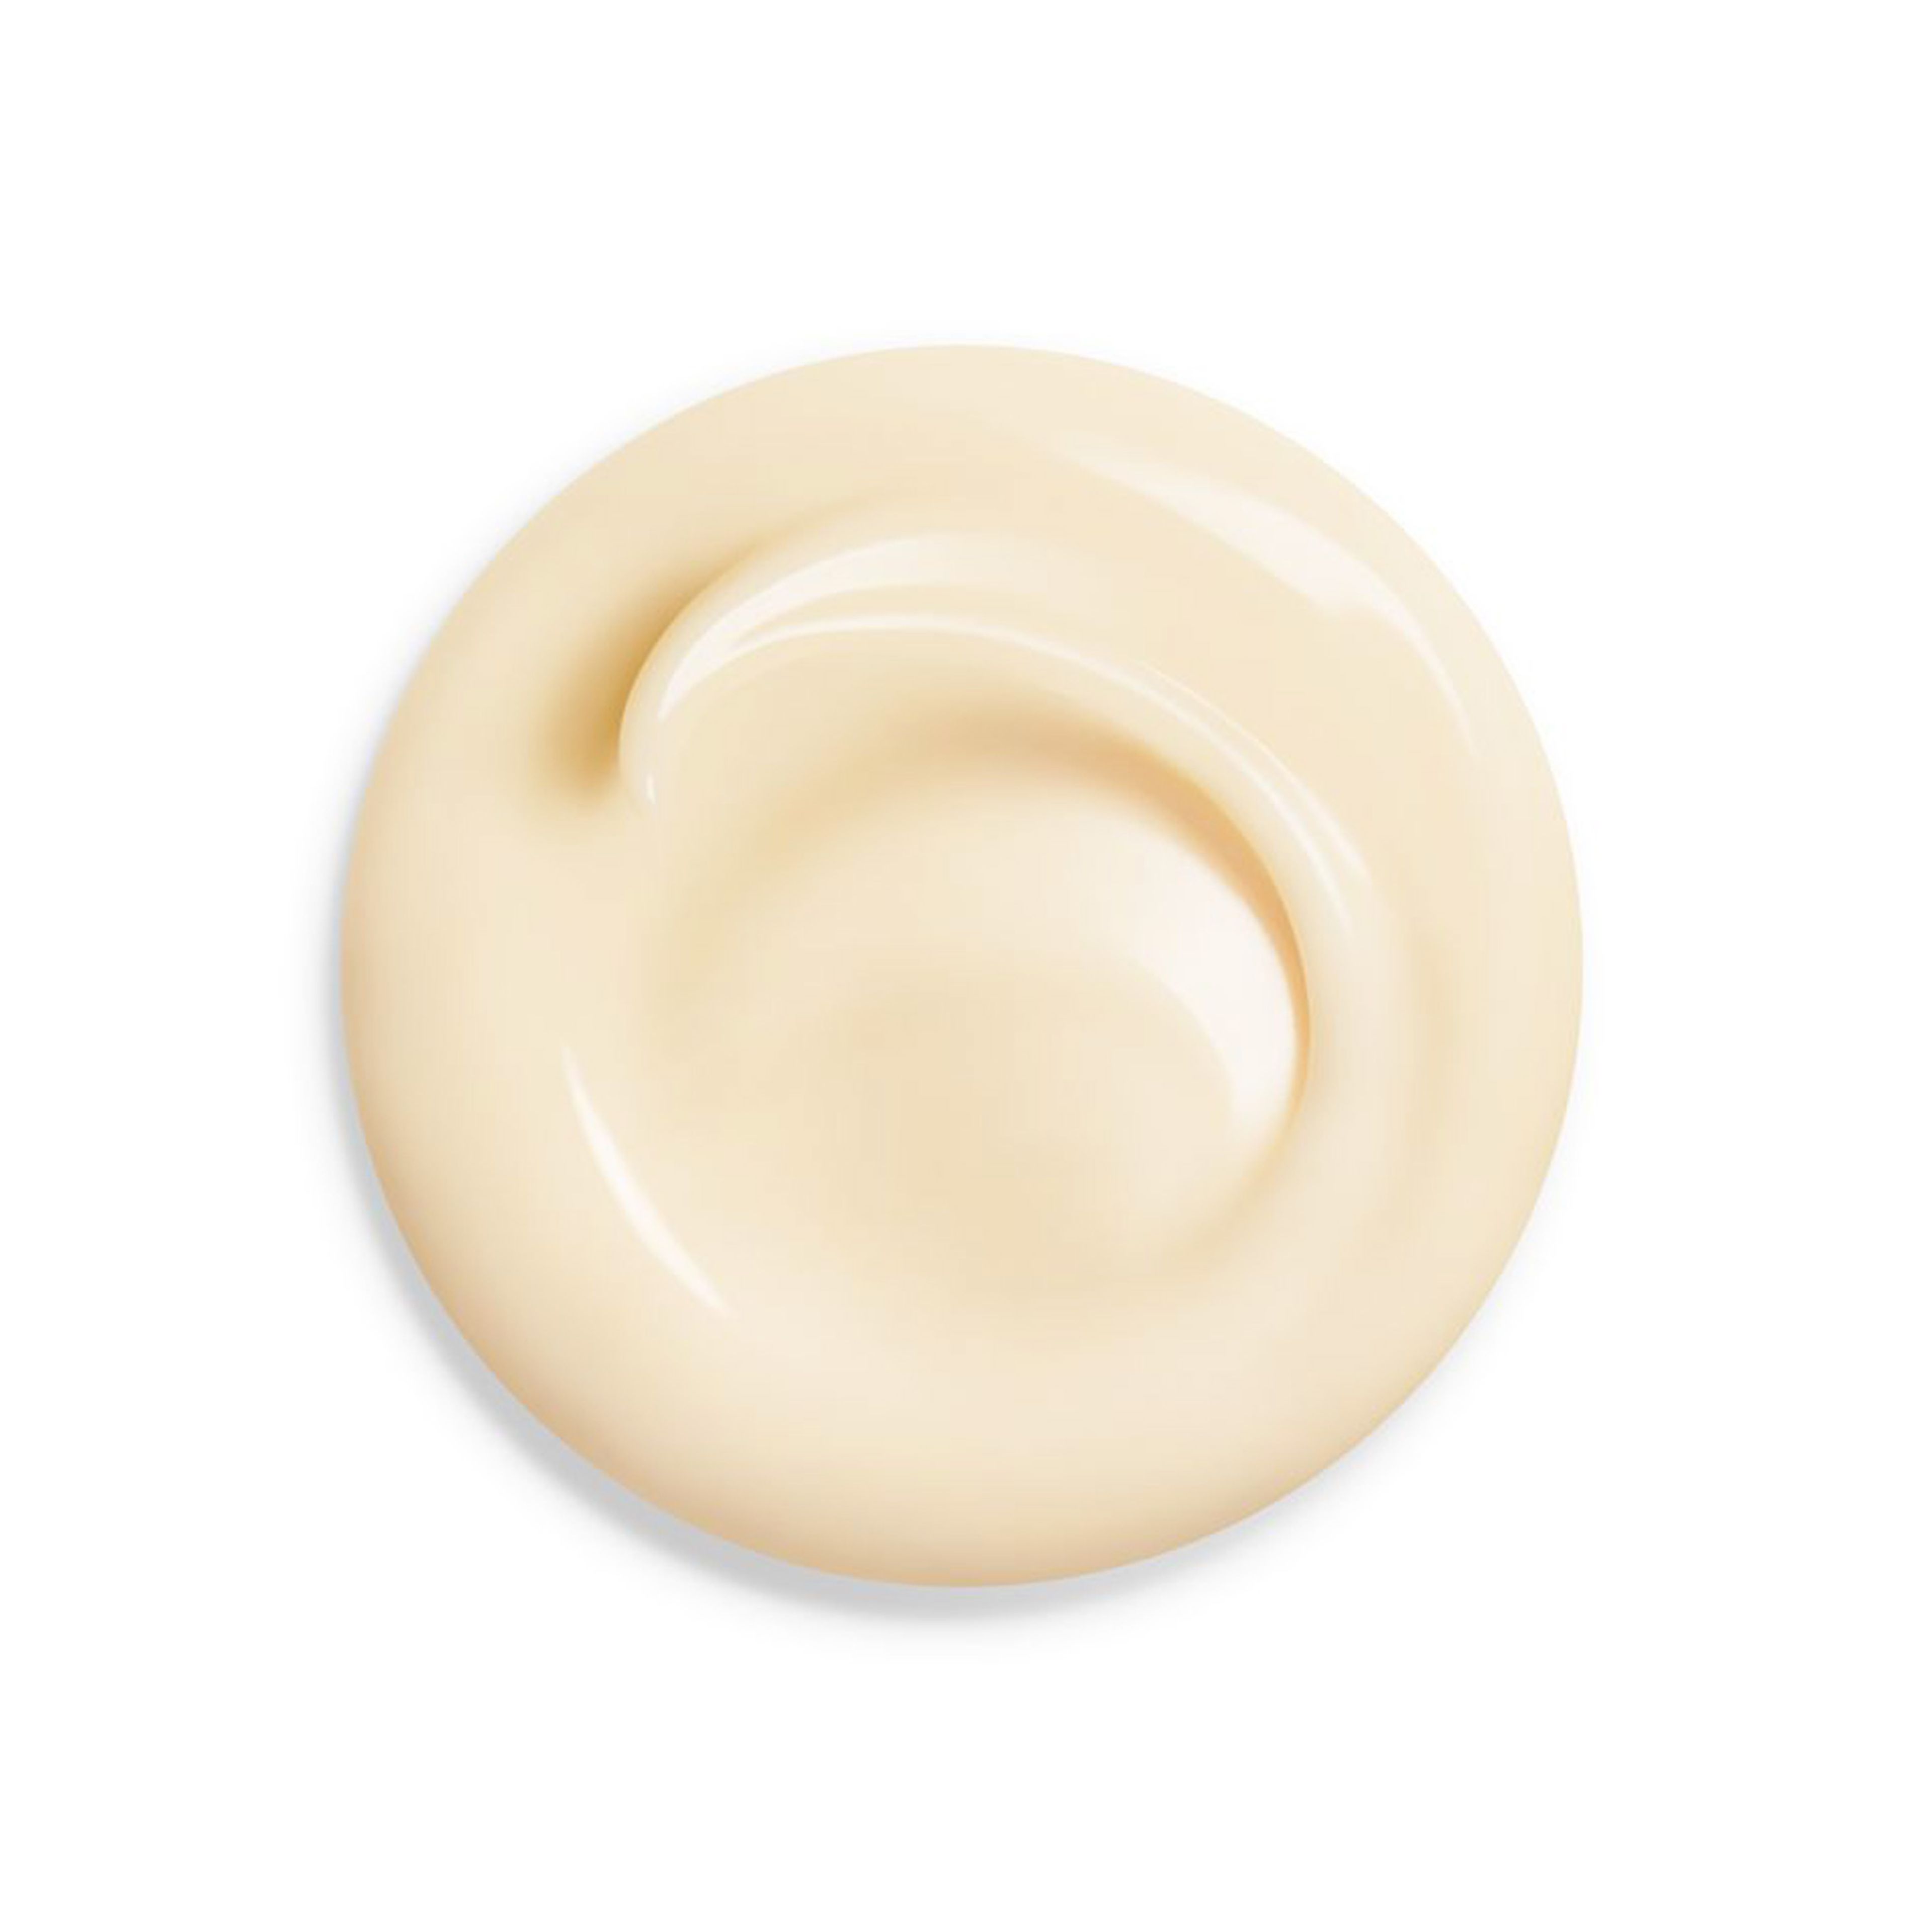 Shiseido Wrinkle Smoothing Cream 6